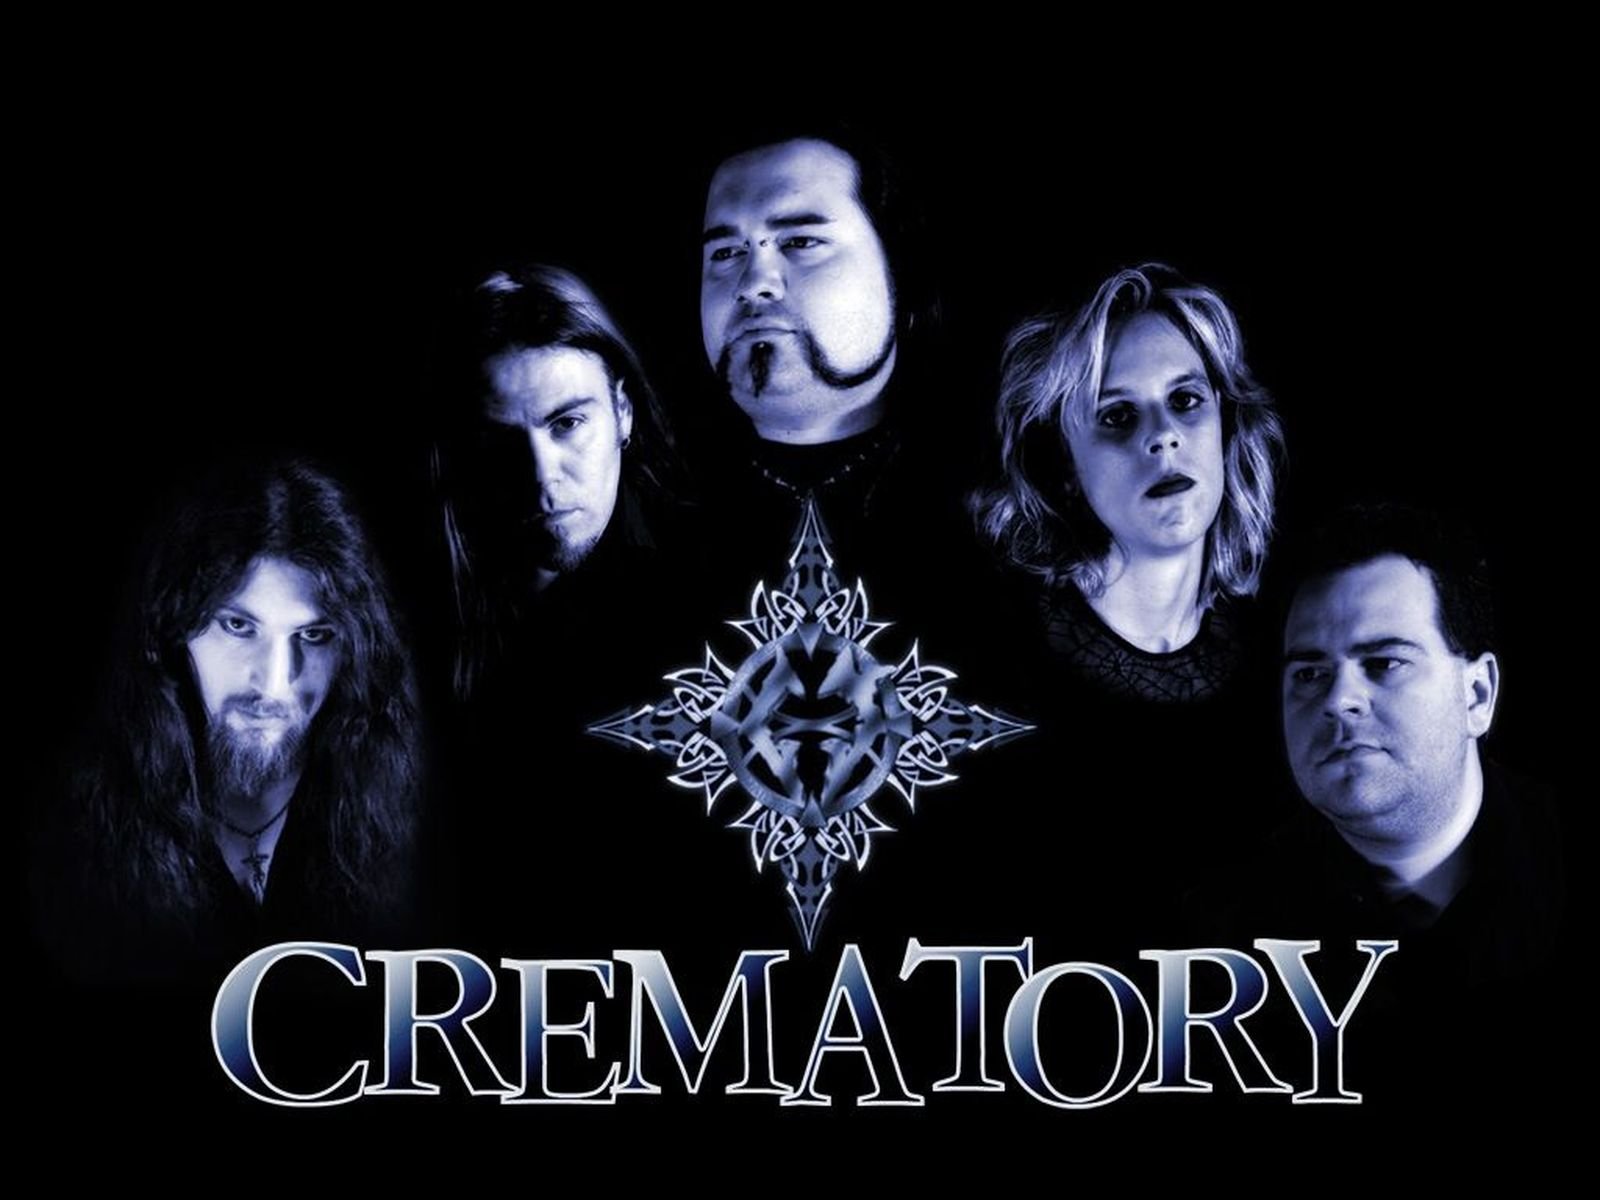 music, crematory